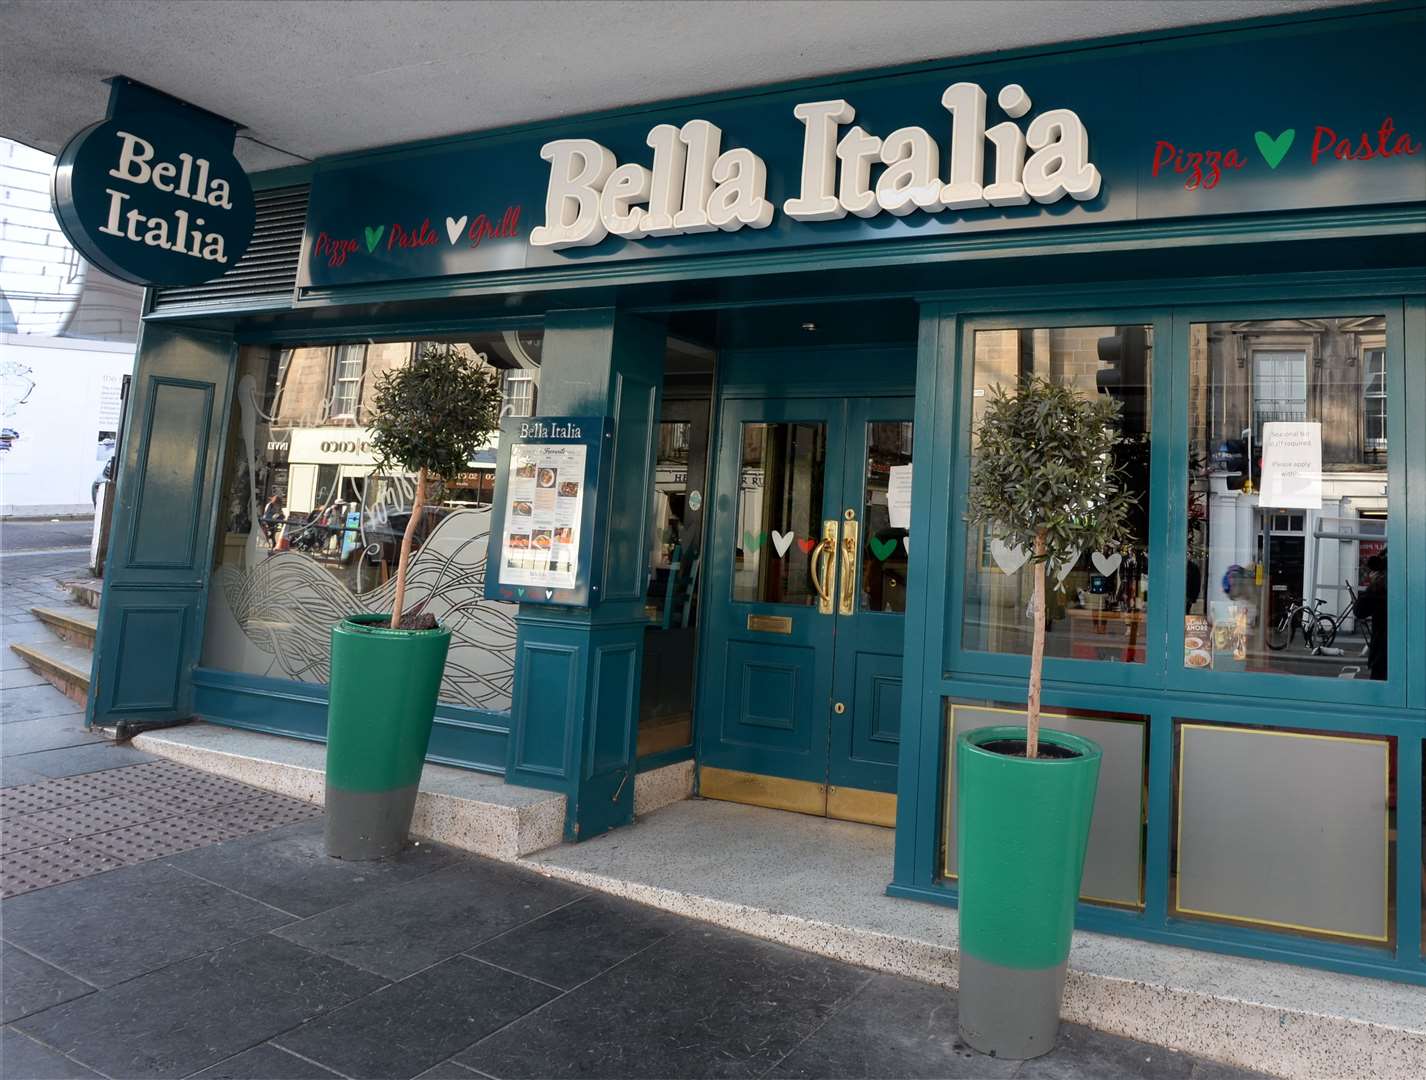 Bella Italia in Inverness.